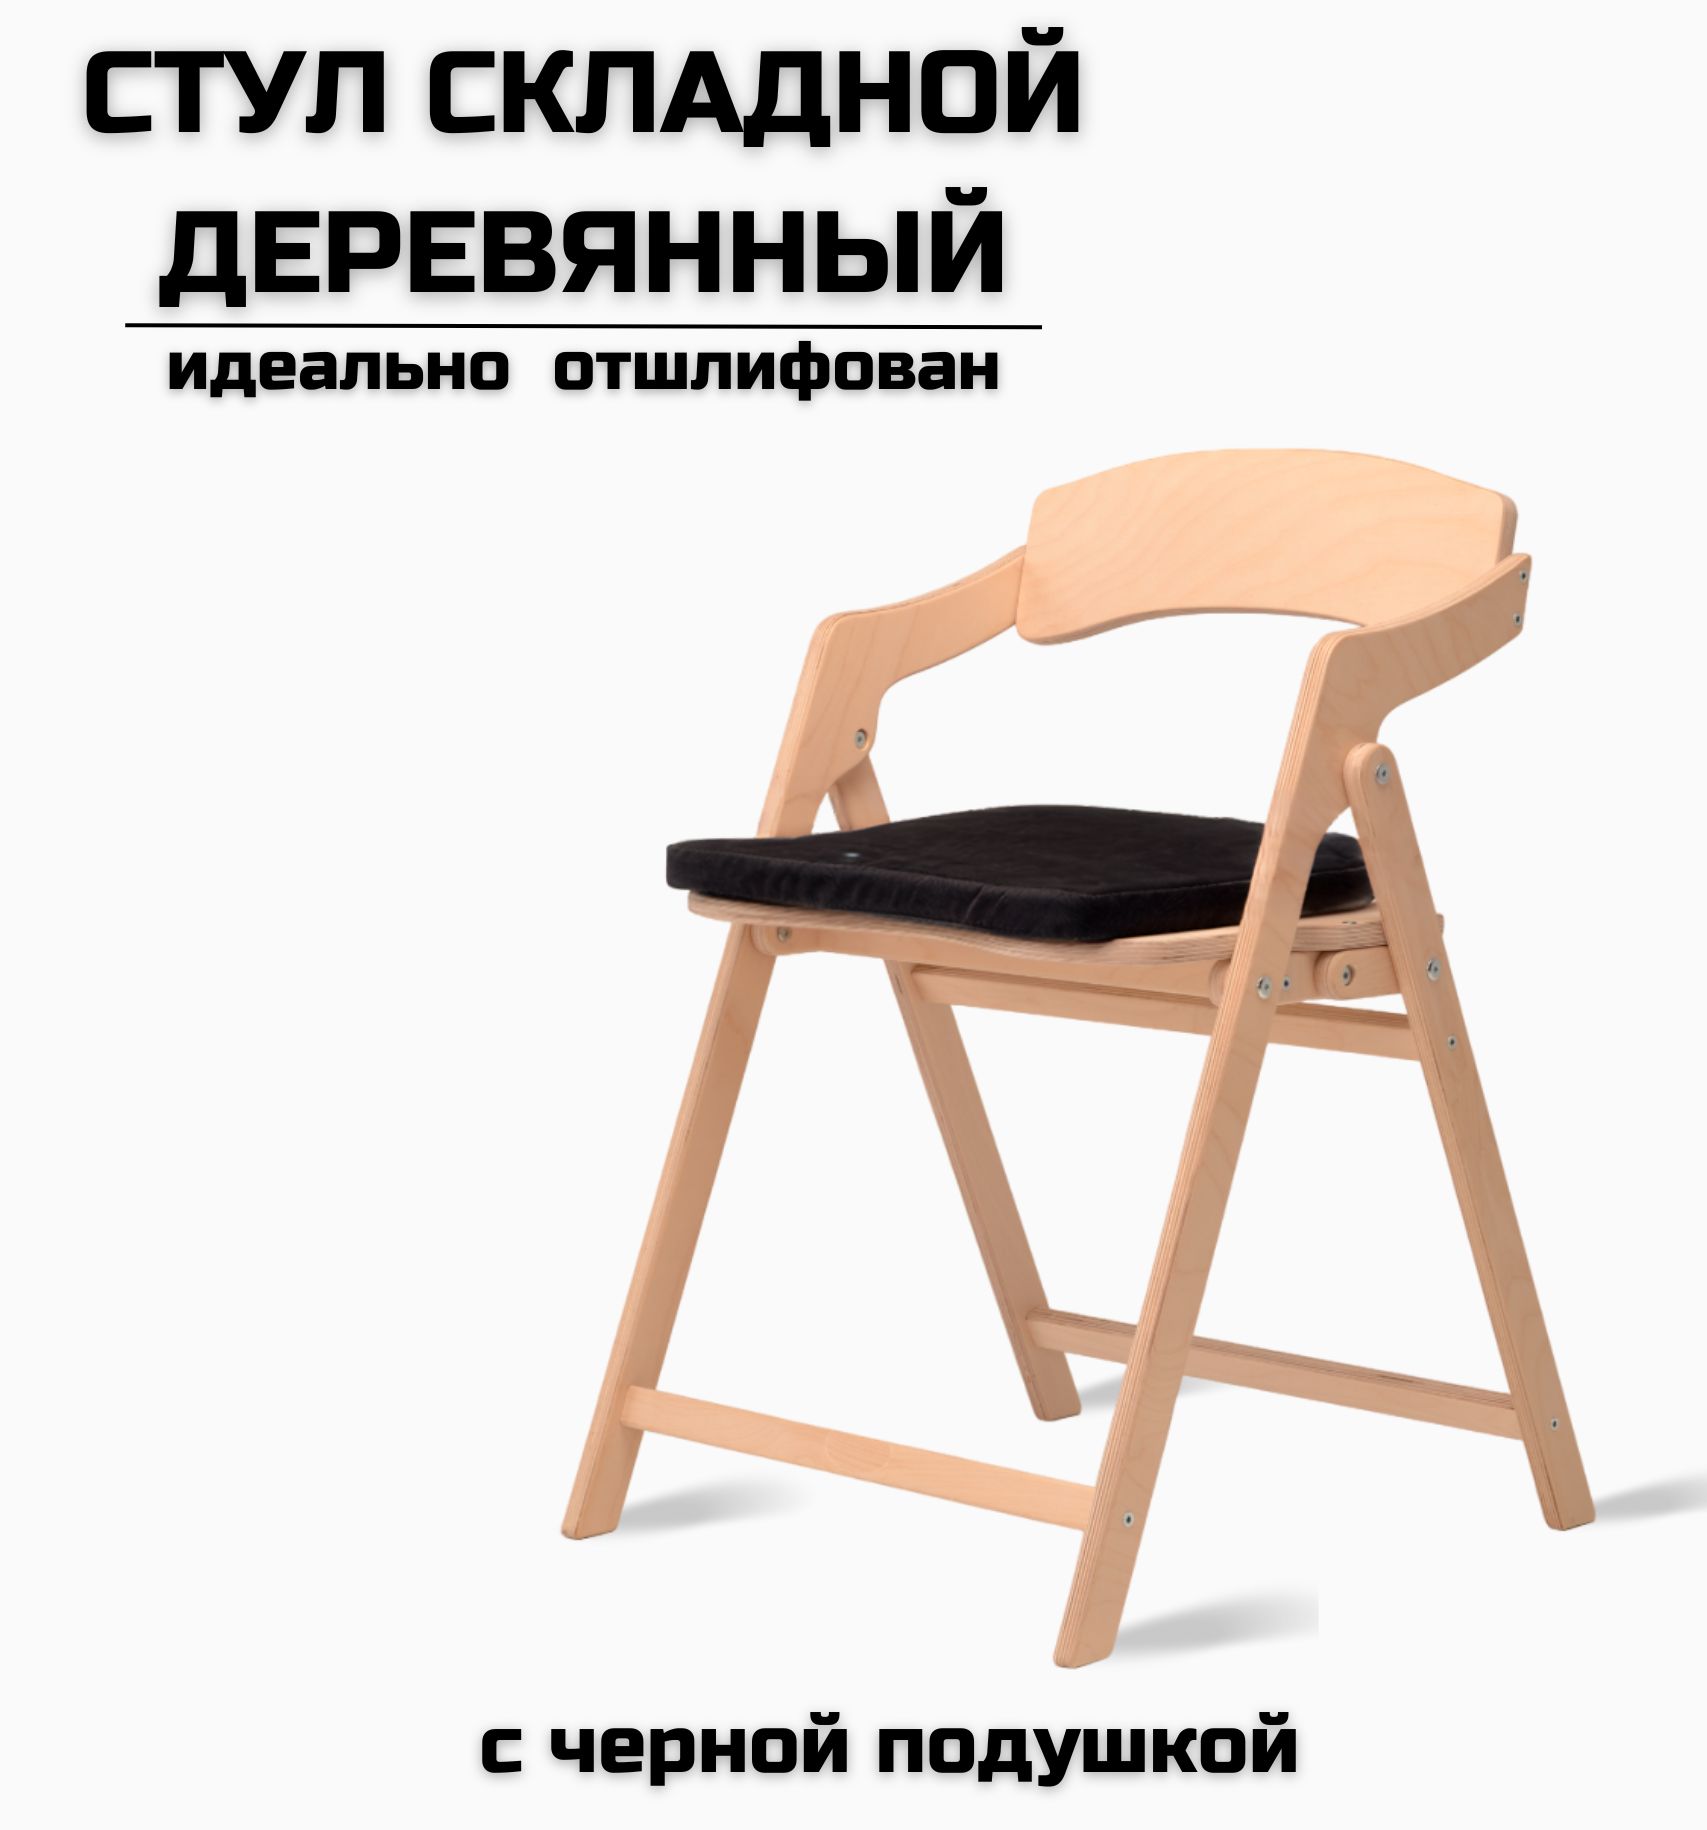 Как сделать стул из фанеры своими руками. Особенности изготовления фанерной мебели